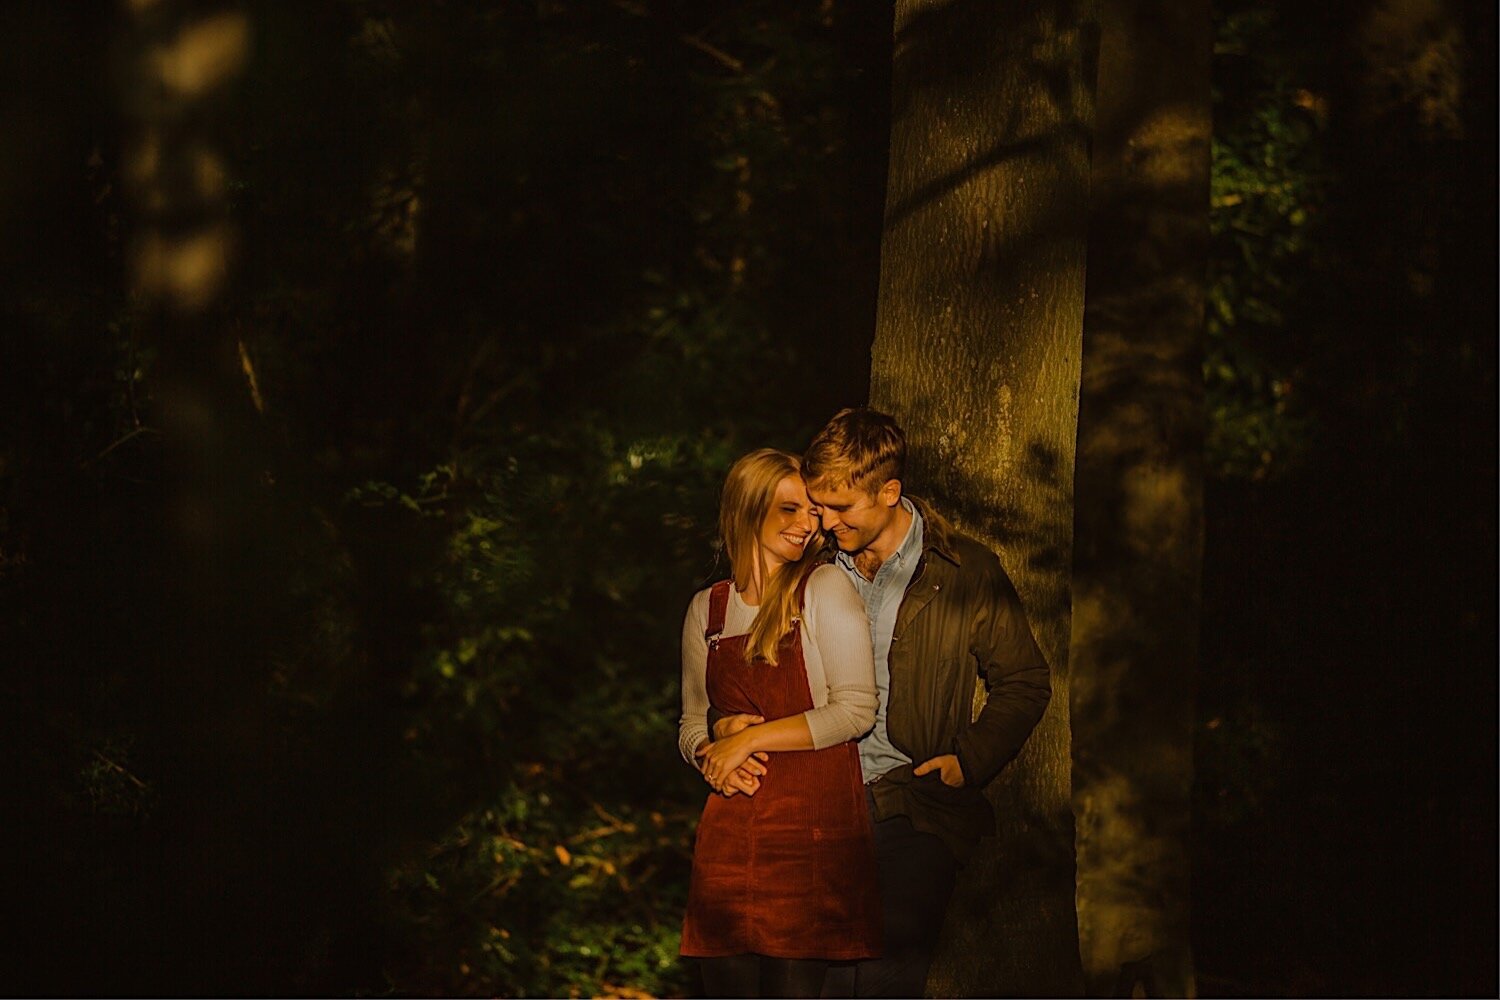 01_TWS-13_couple_autumn_engagement_sunset_shoot_henley_photography_woodland_wedding.jpg